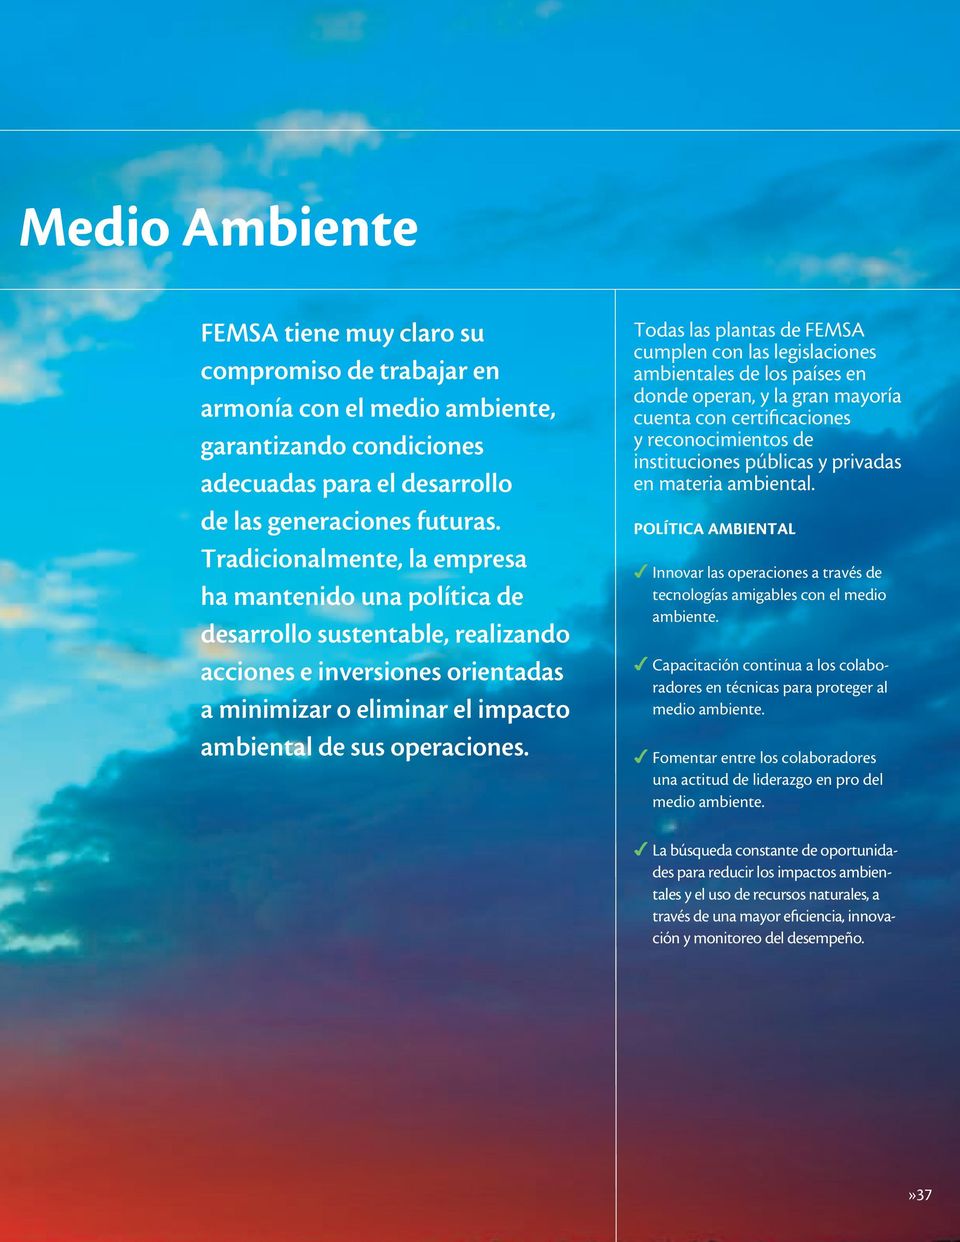 Todas las plantas de FEMSA cumplen con las legislaciones ambientales de los países en donde operan, y la gran mayoría cuenta con certificaciones y reconocimientos de instituciones públicas y privadas